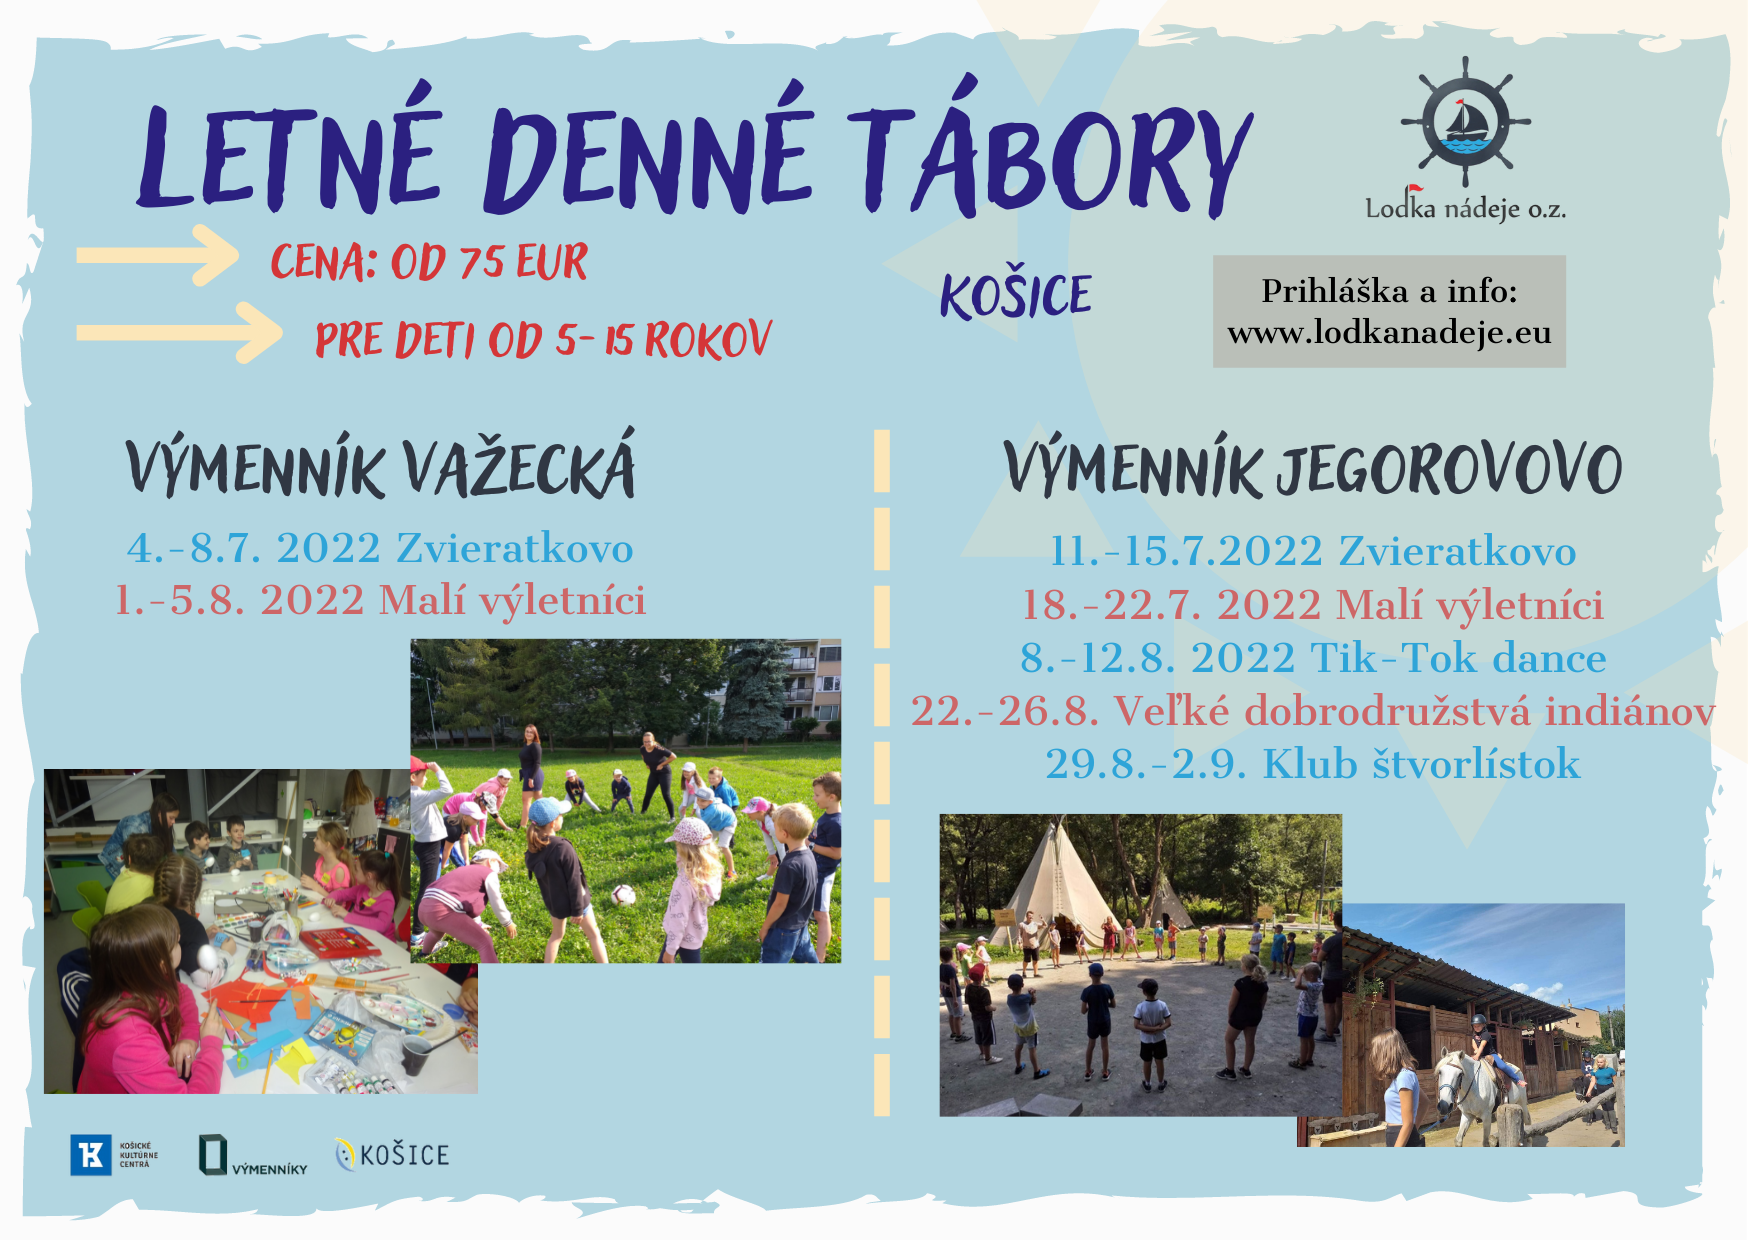 Letné denné tábory Košice